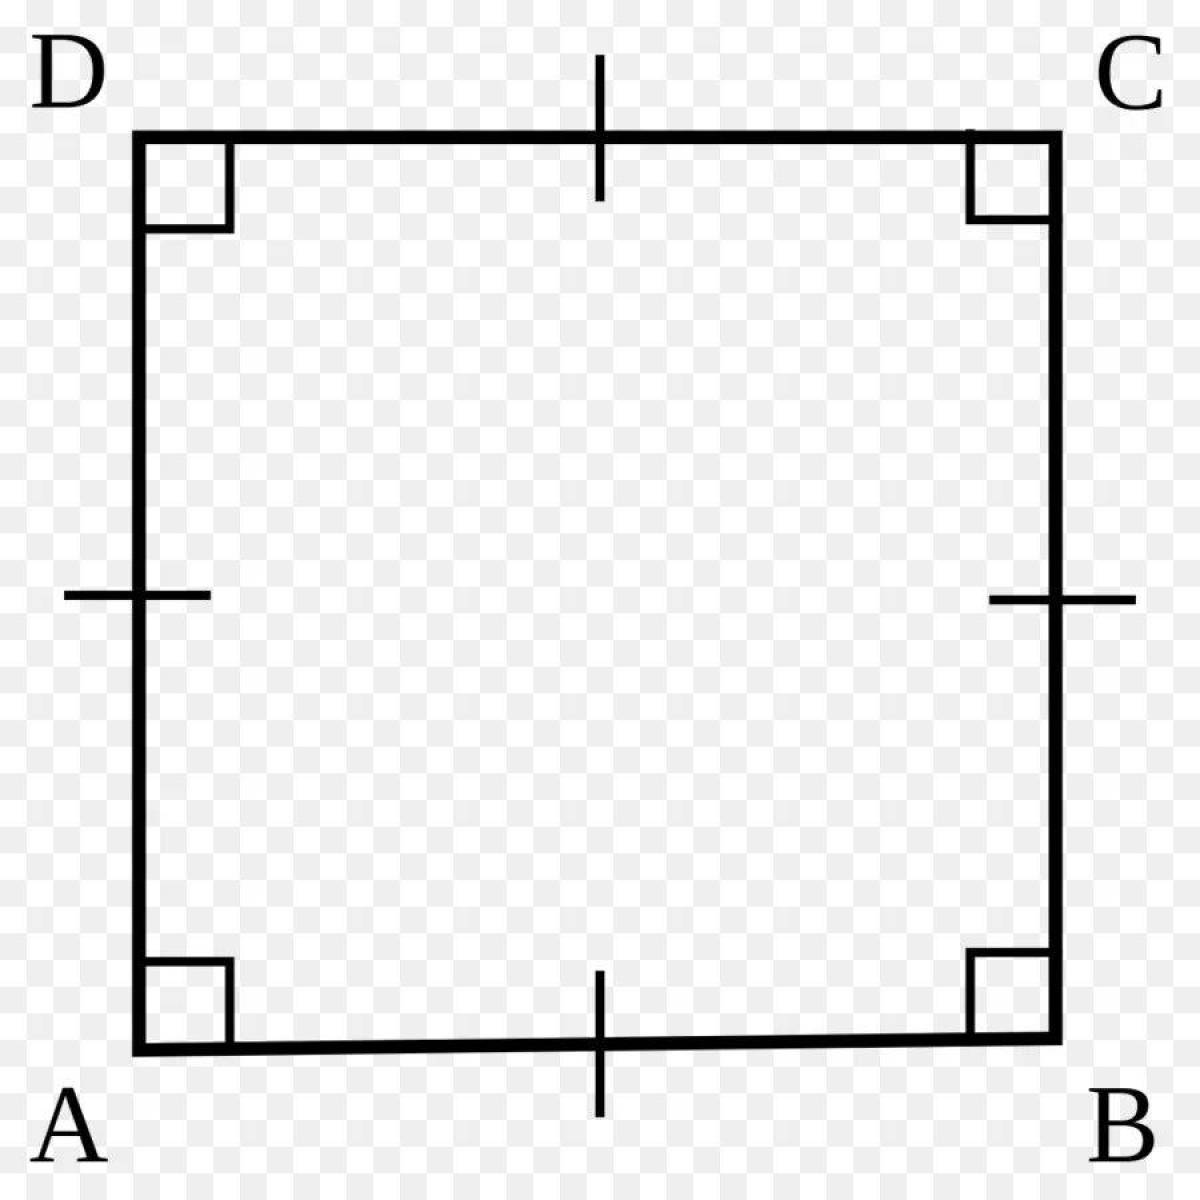 Kare de. Квадрат. Геометрические фигуры квадрат. Квардартгеометрическая фигура. Квадратное изображение.